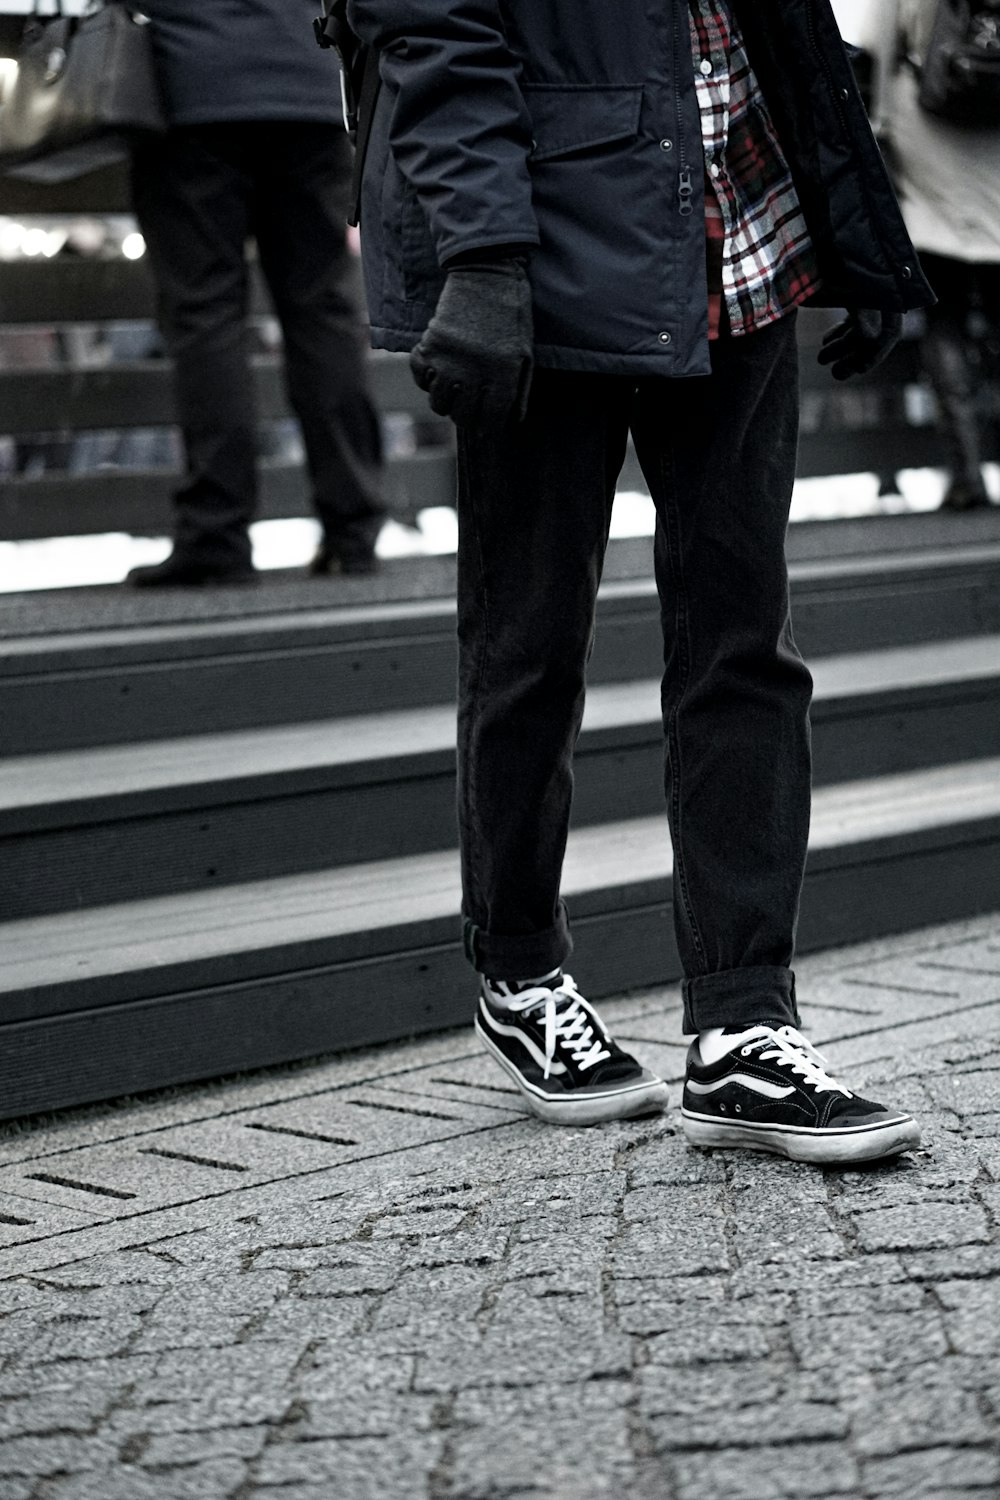 Man wearing black vans sneakers photo – Free Vans Image on Unsplash